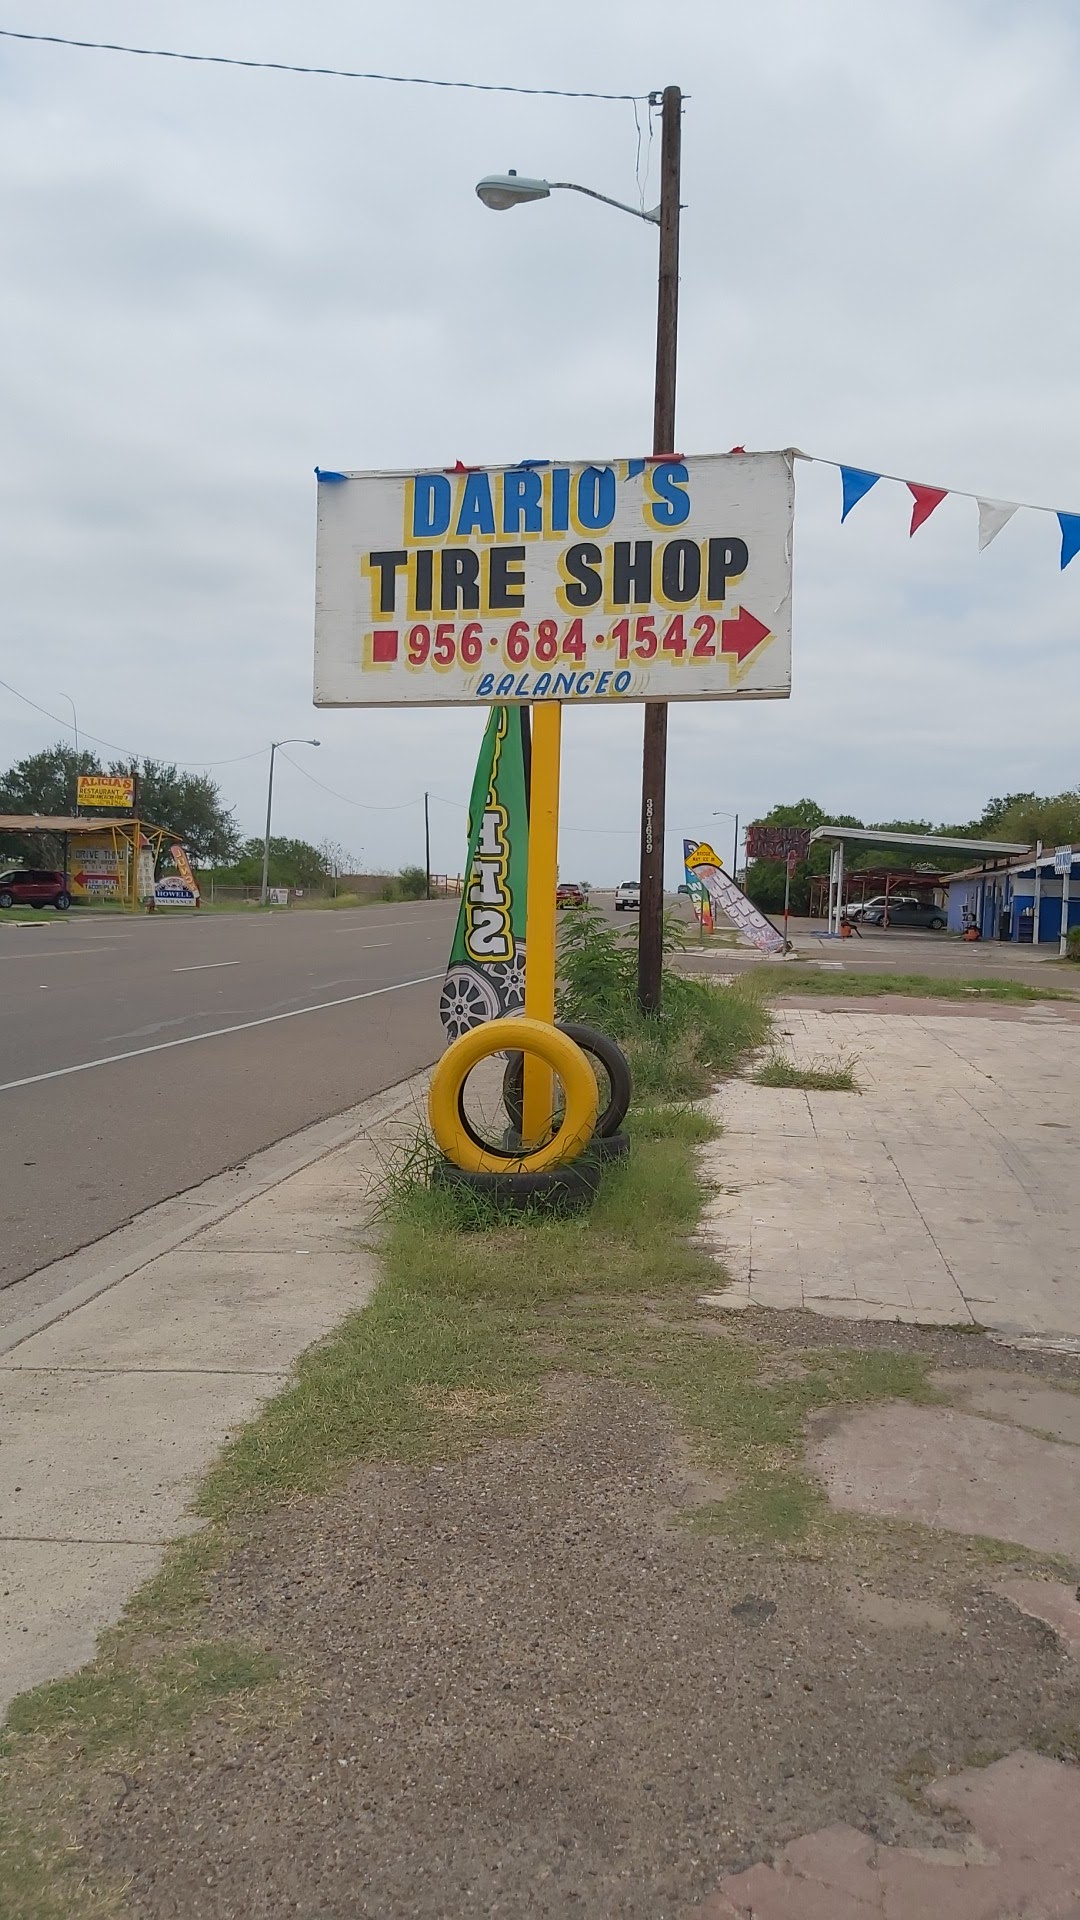 Dario's Tire Shop